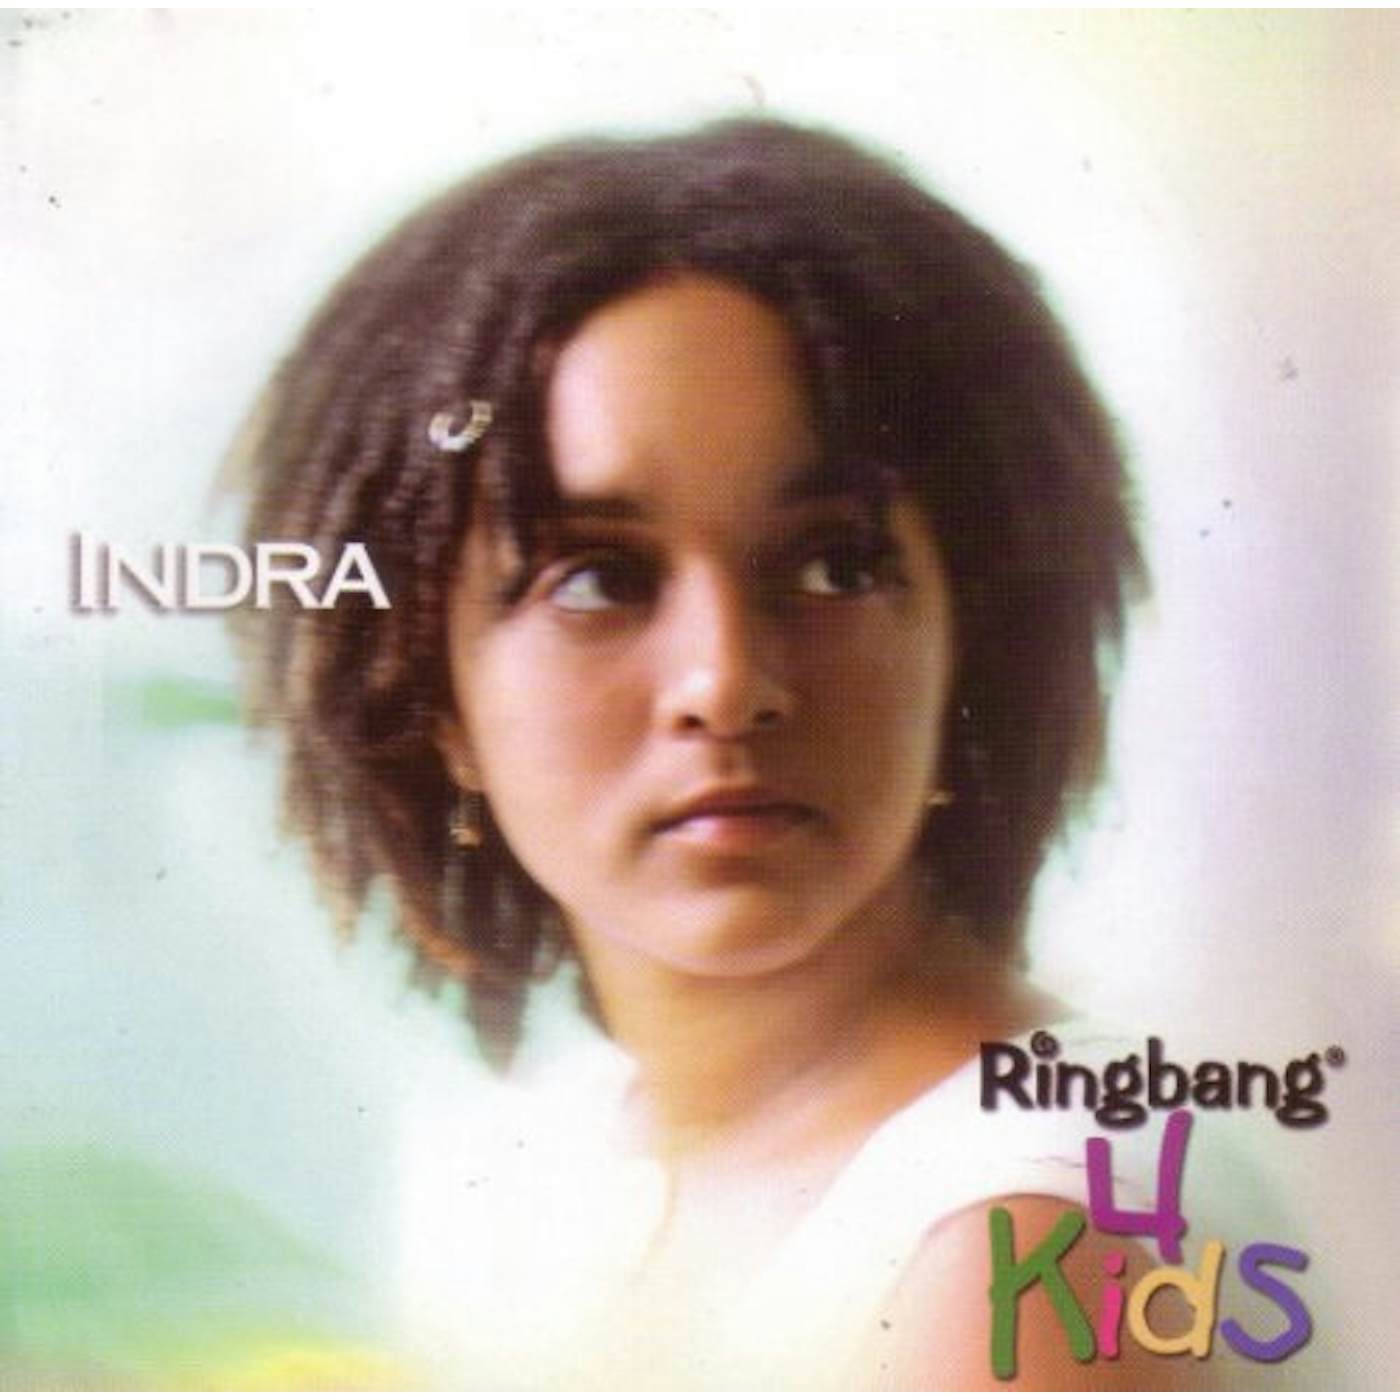 Indra RINGBANG FOR KIDS CD